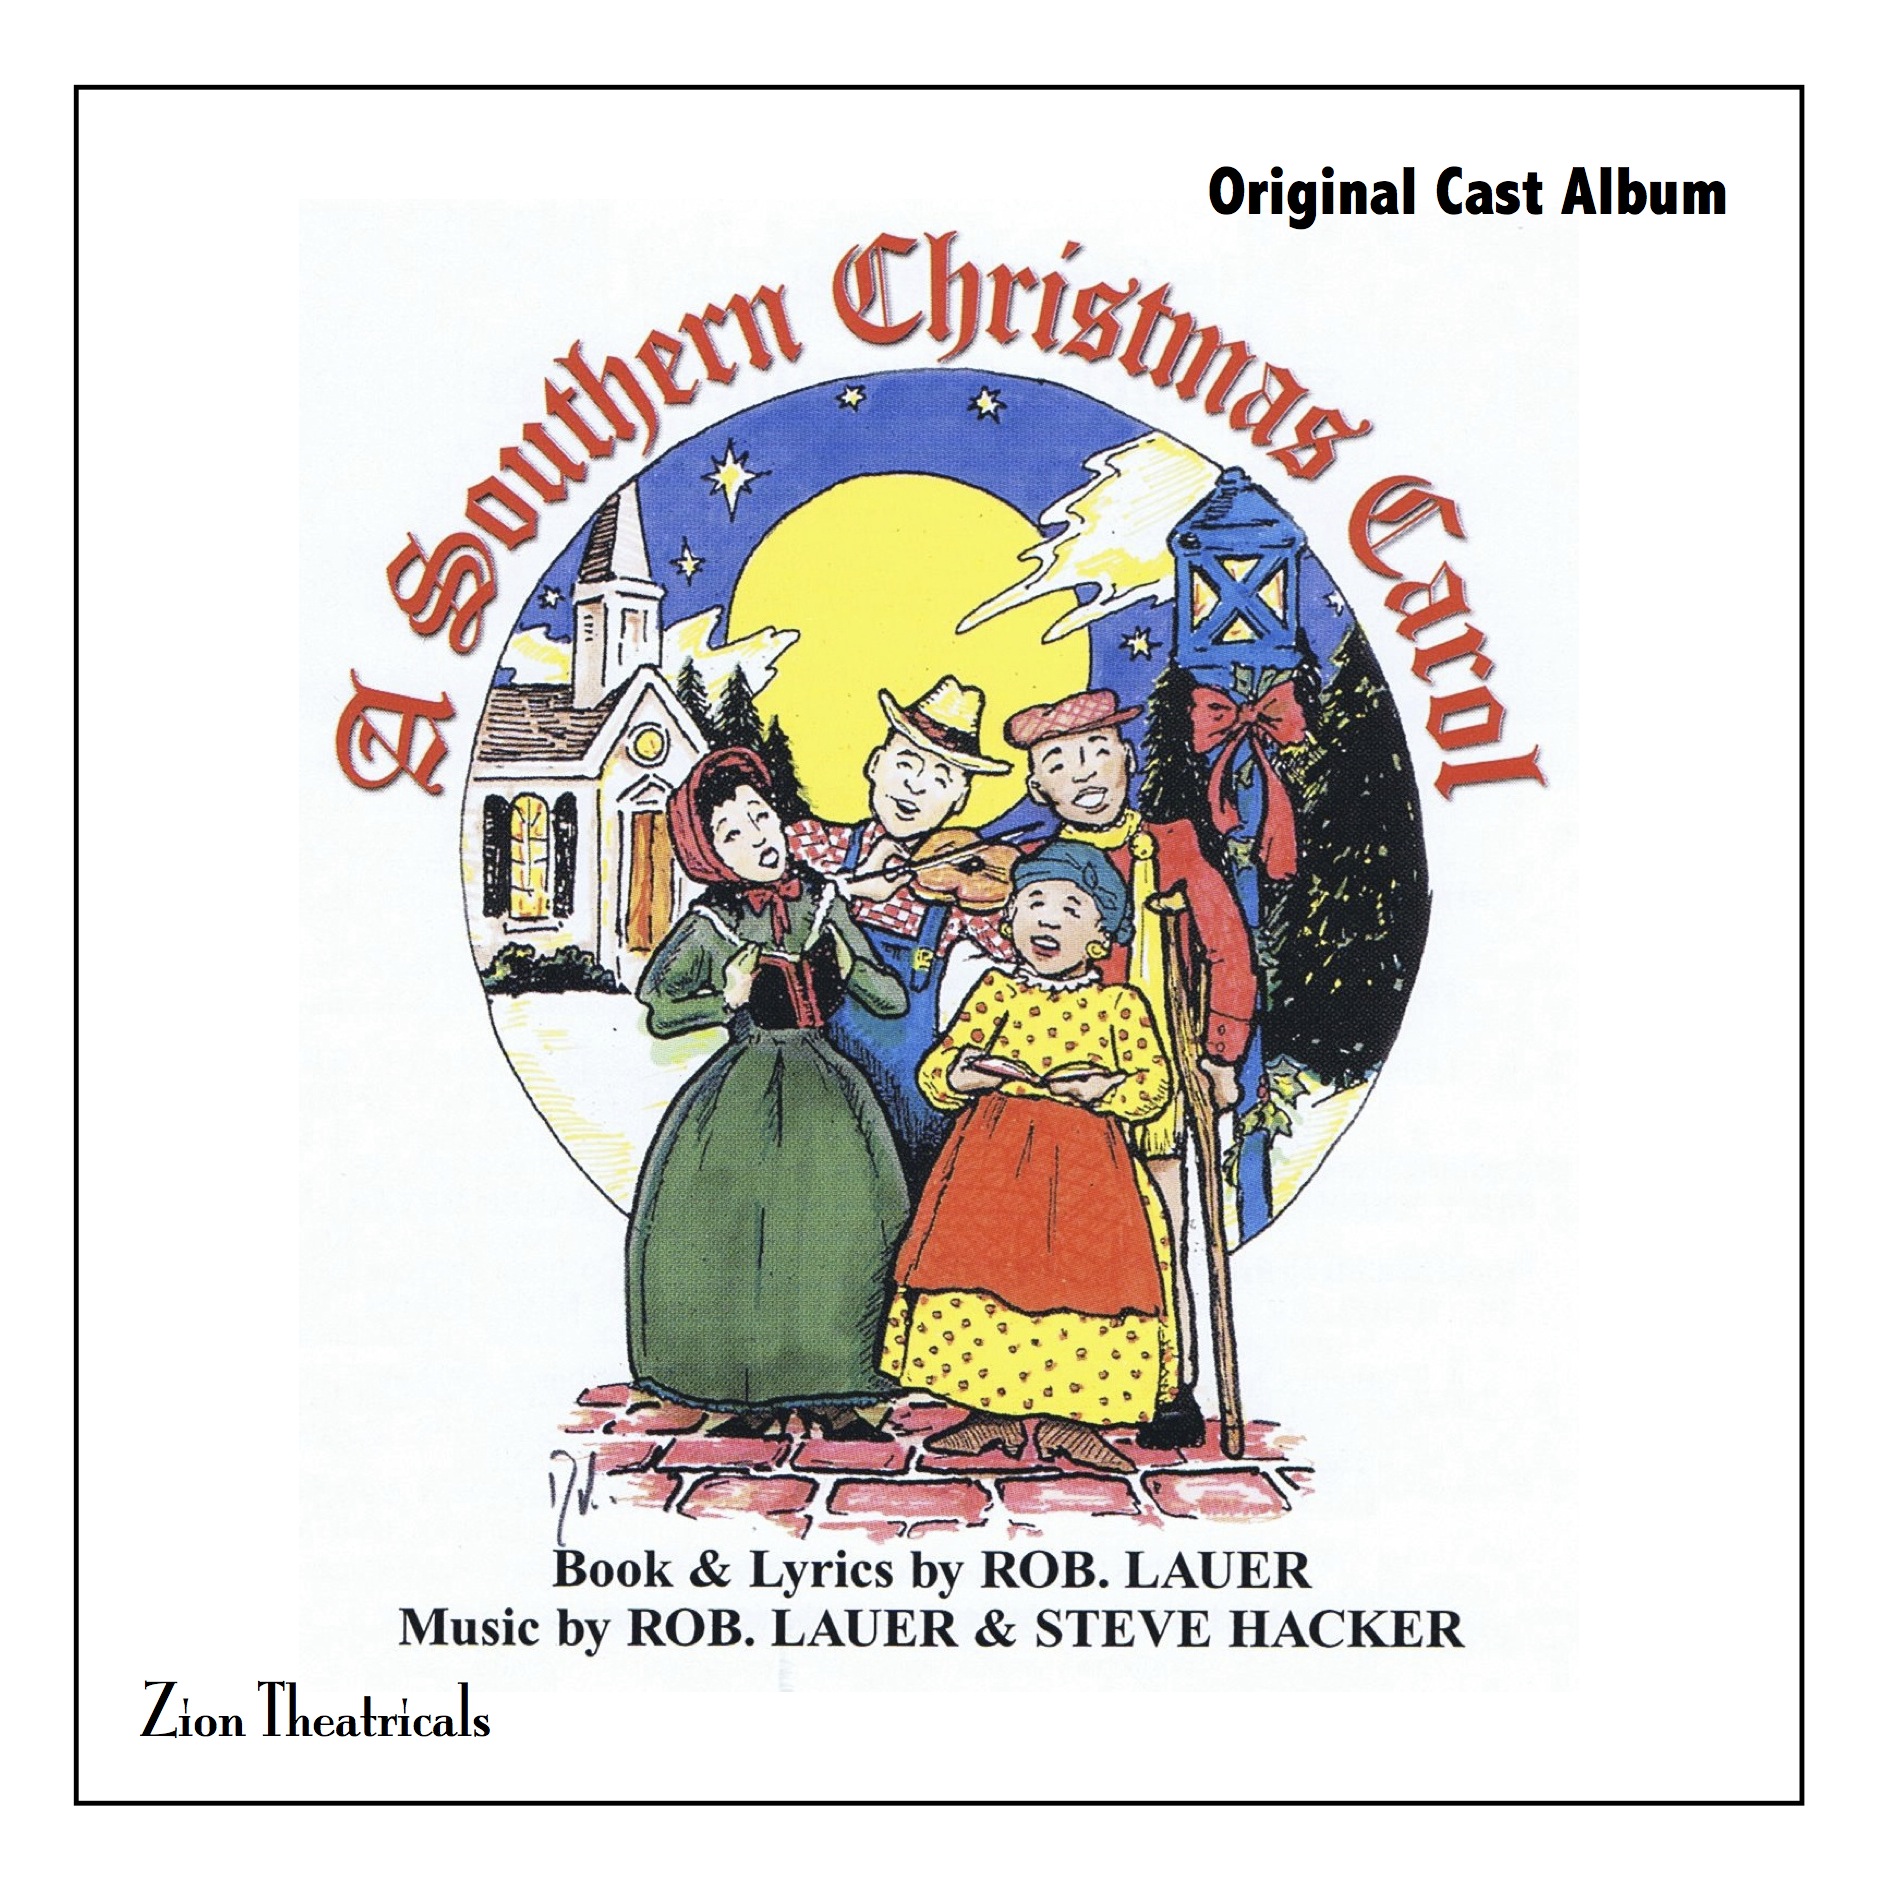 A Southern Christmas Carol – Original Cast CD